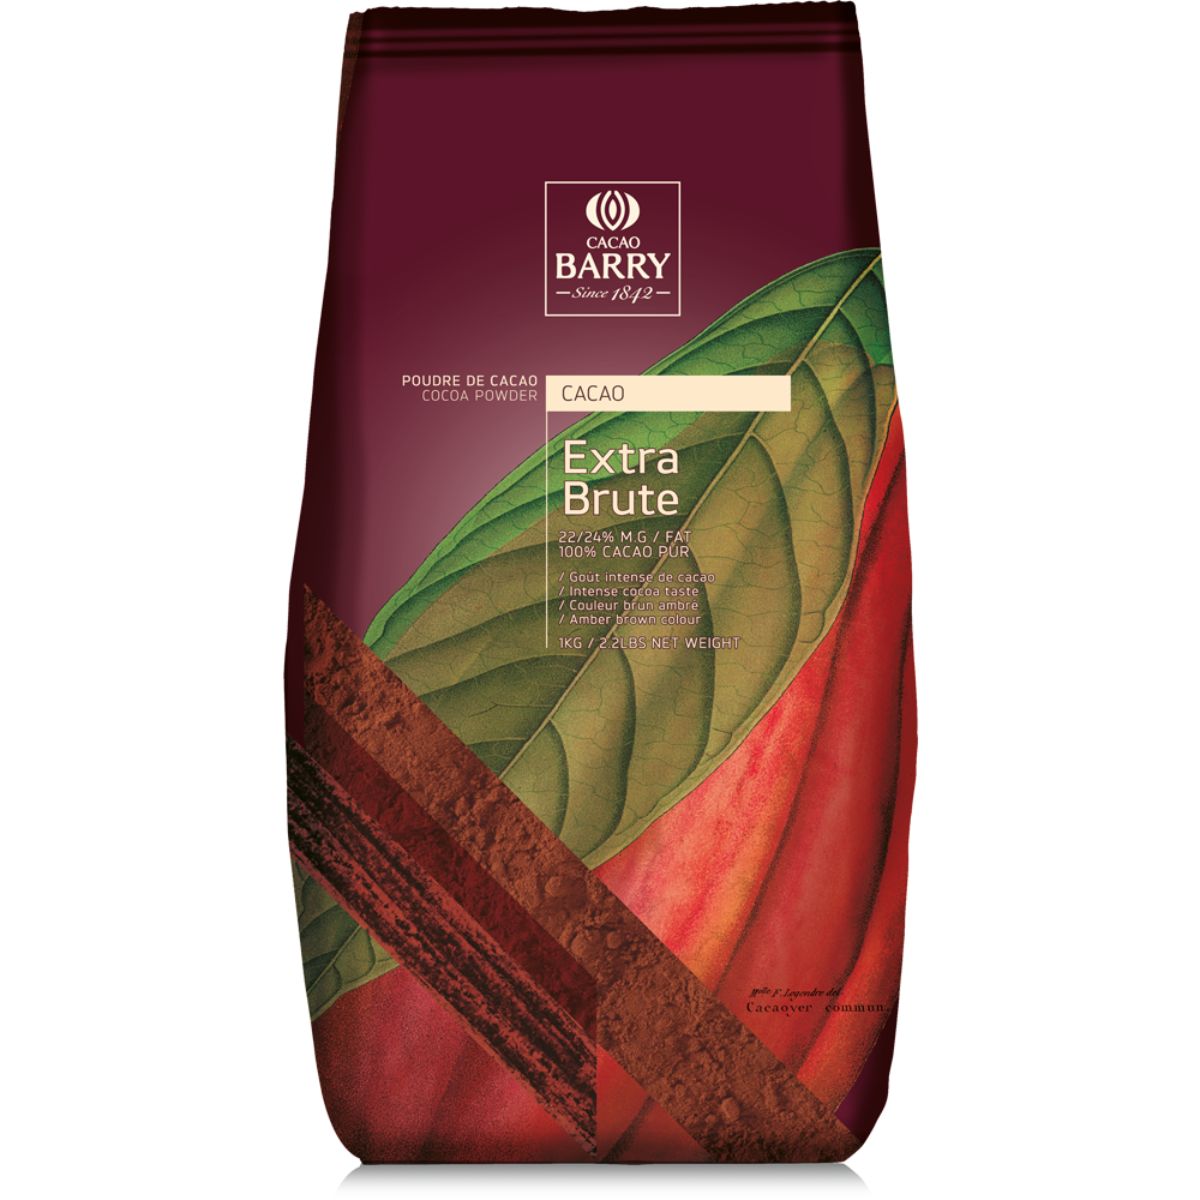 Beurre de cacao 3 kg - Cacao barry